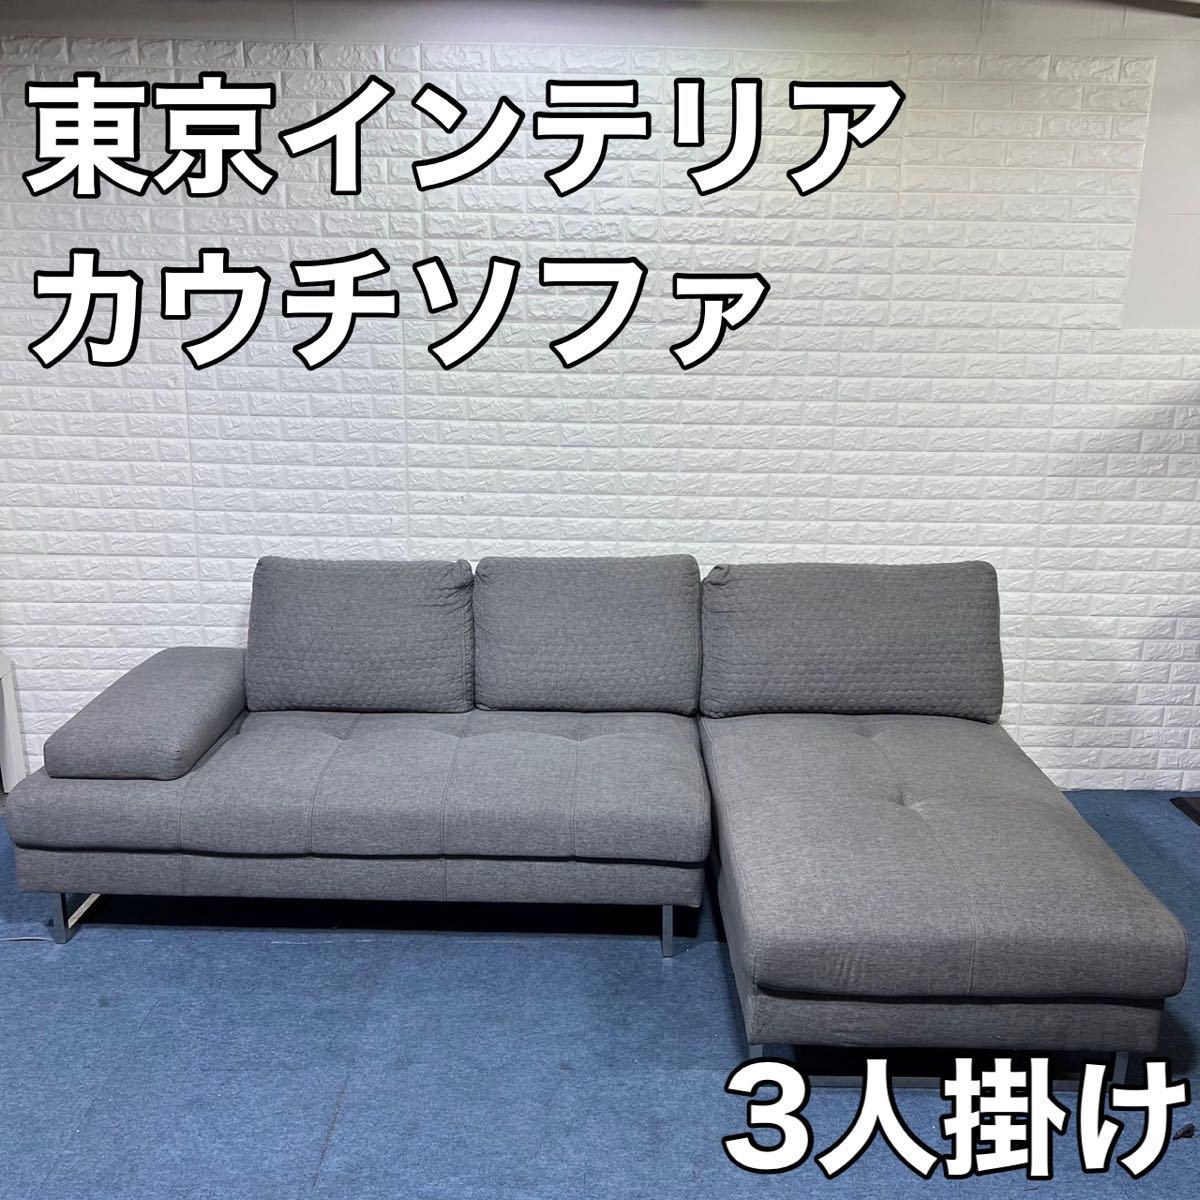 東京インテリア ソファー カウチソファー 3人掛け シンプル 家具 リビング